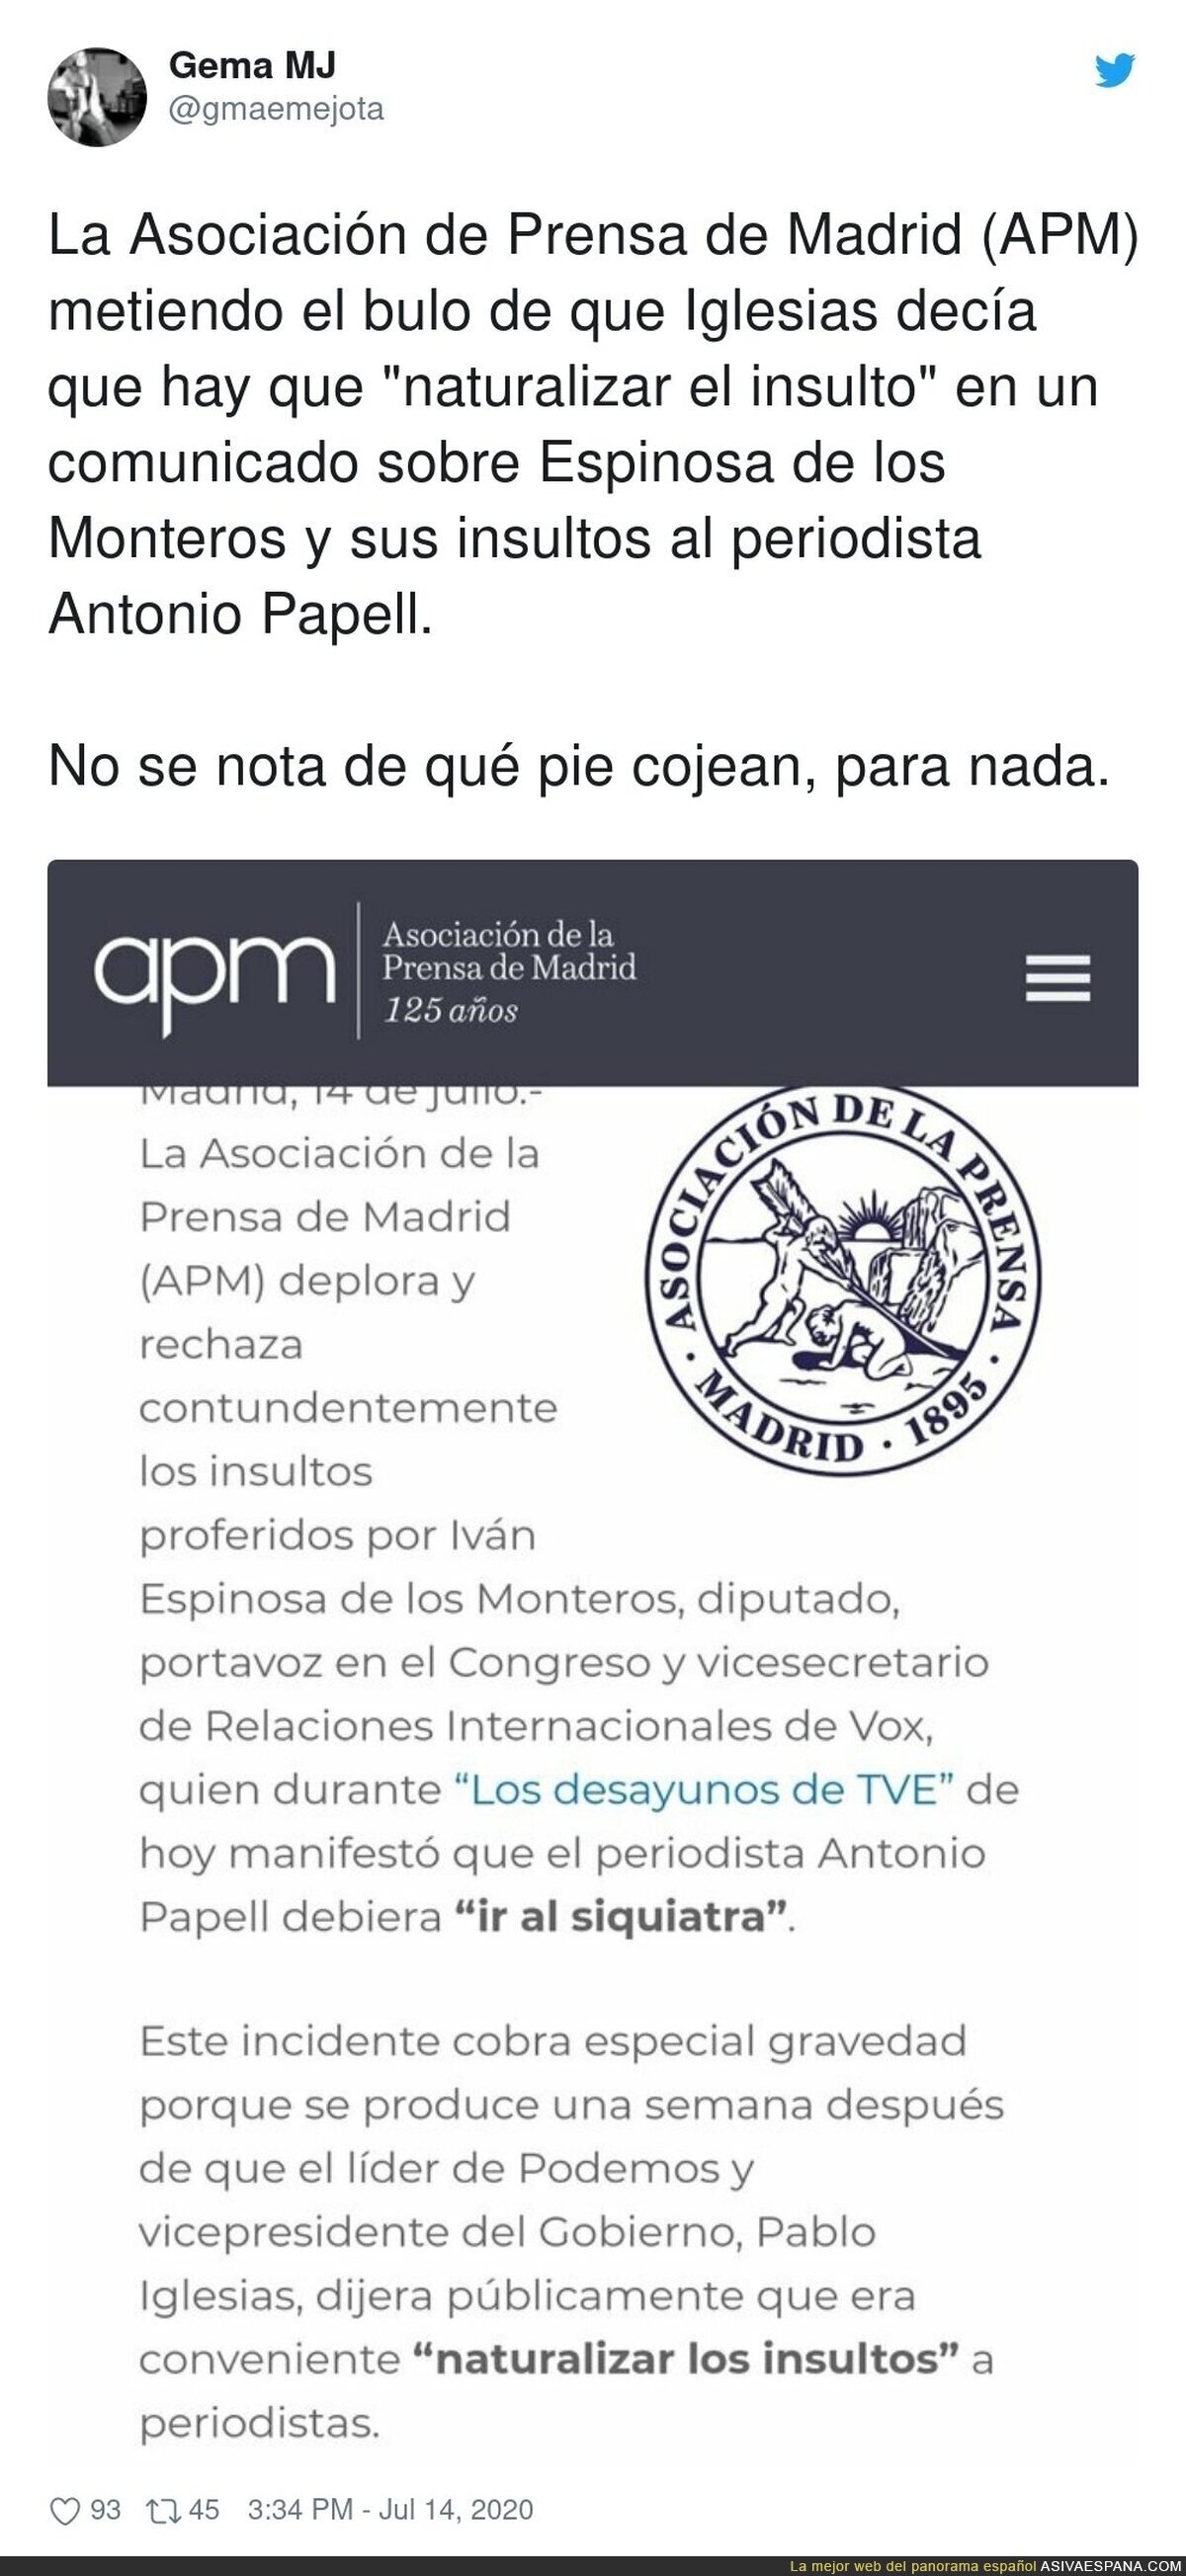 La Asociación de la Prensa de Madrid difundiendo bulos y culpa a Pablo Iglesias